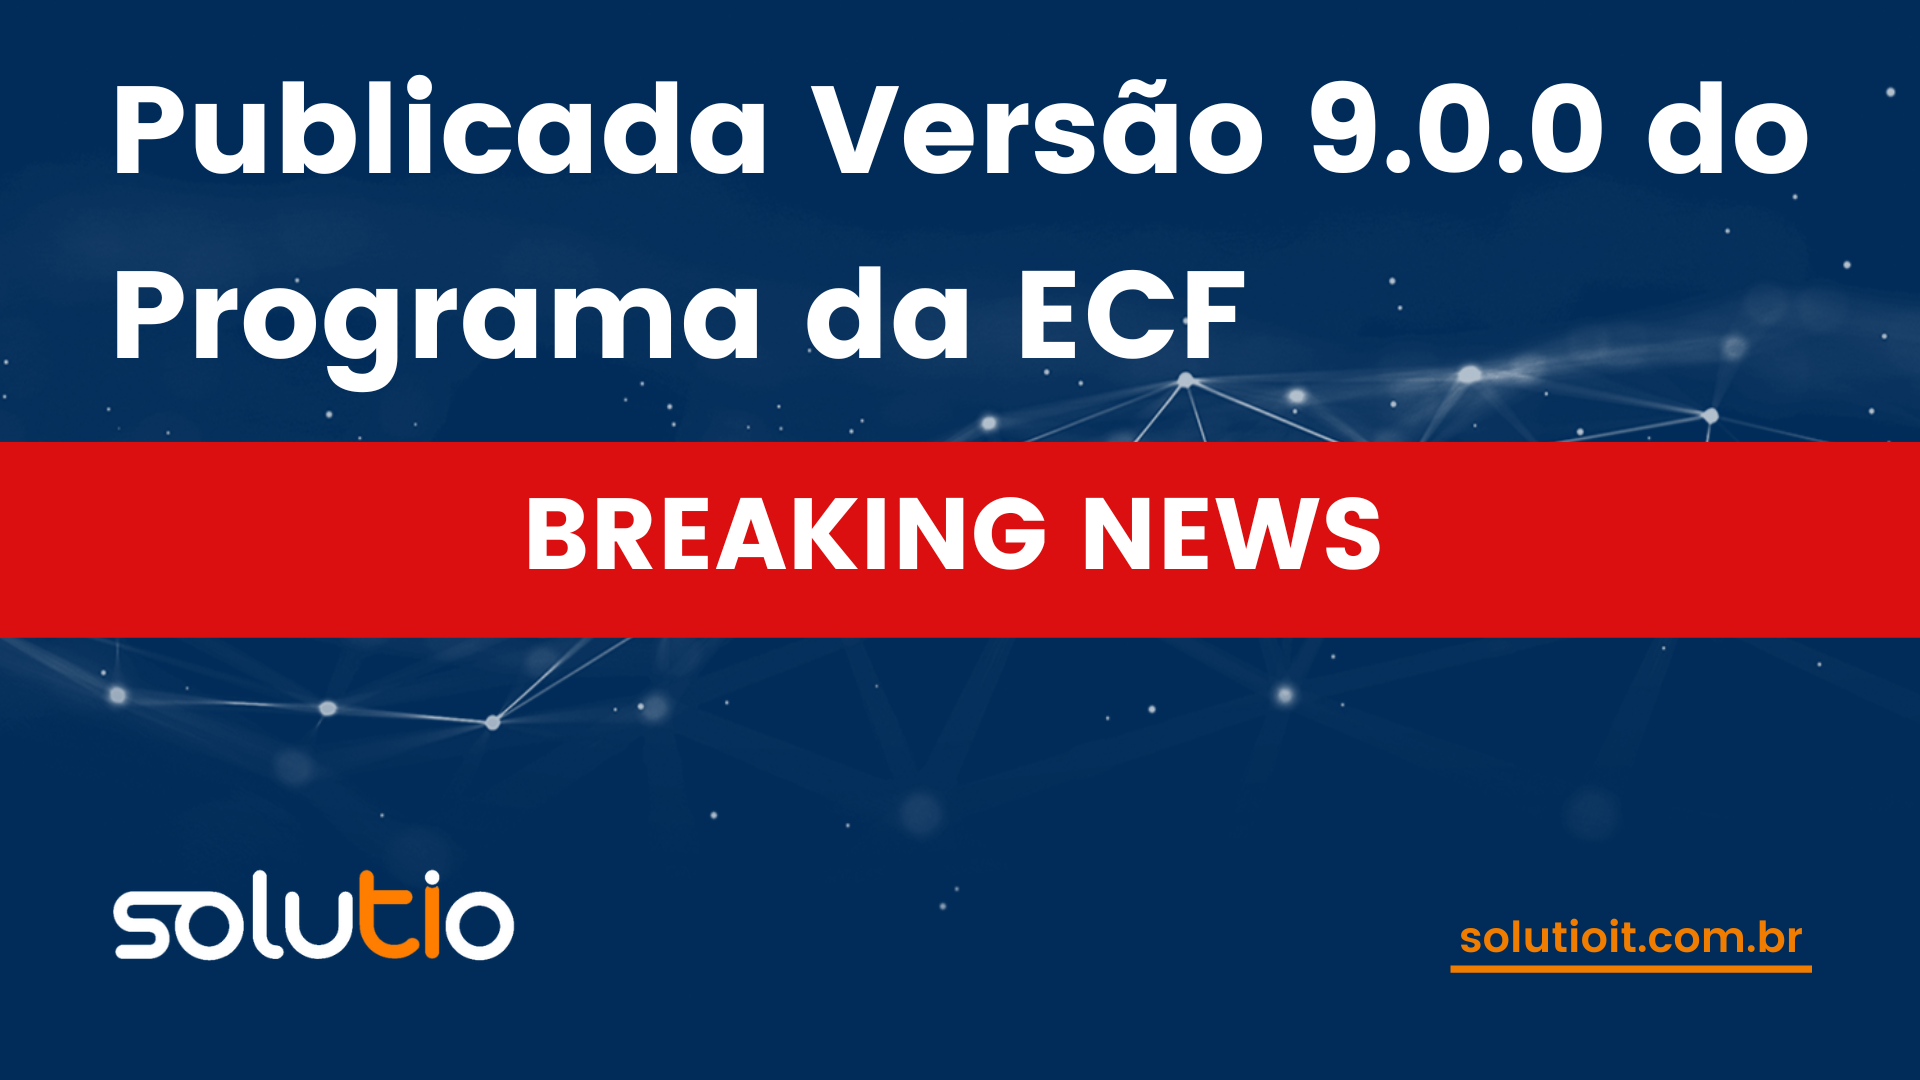 Publicada Versão 9.0.0 do Programa da ECF